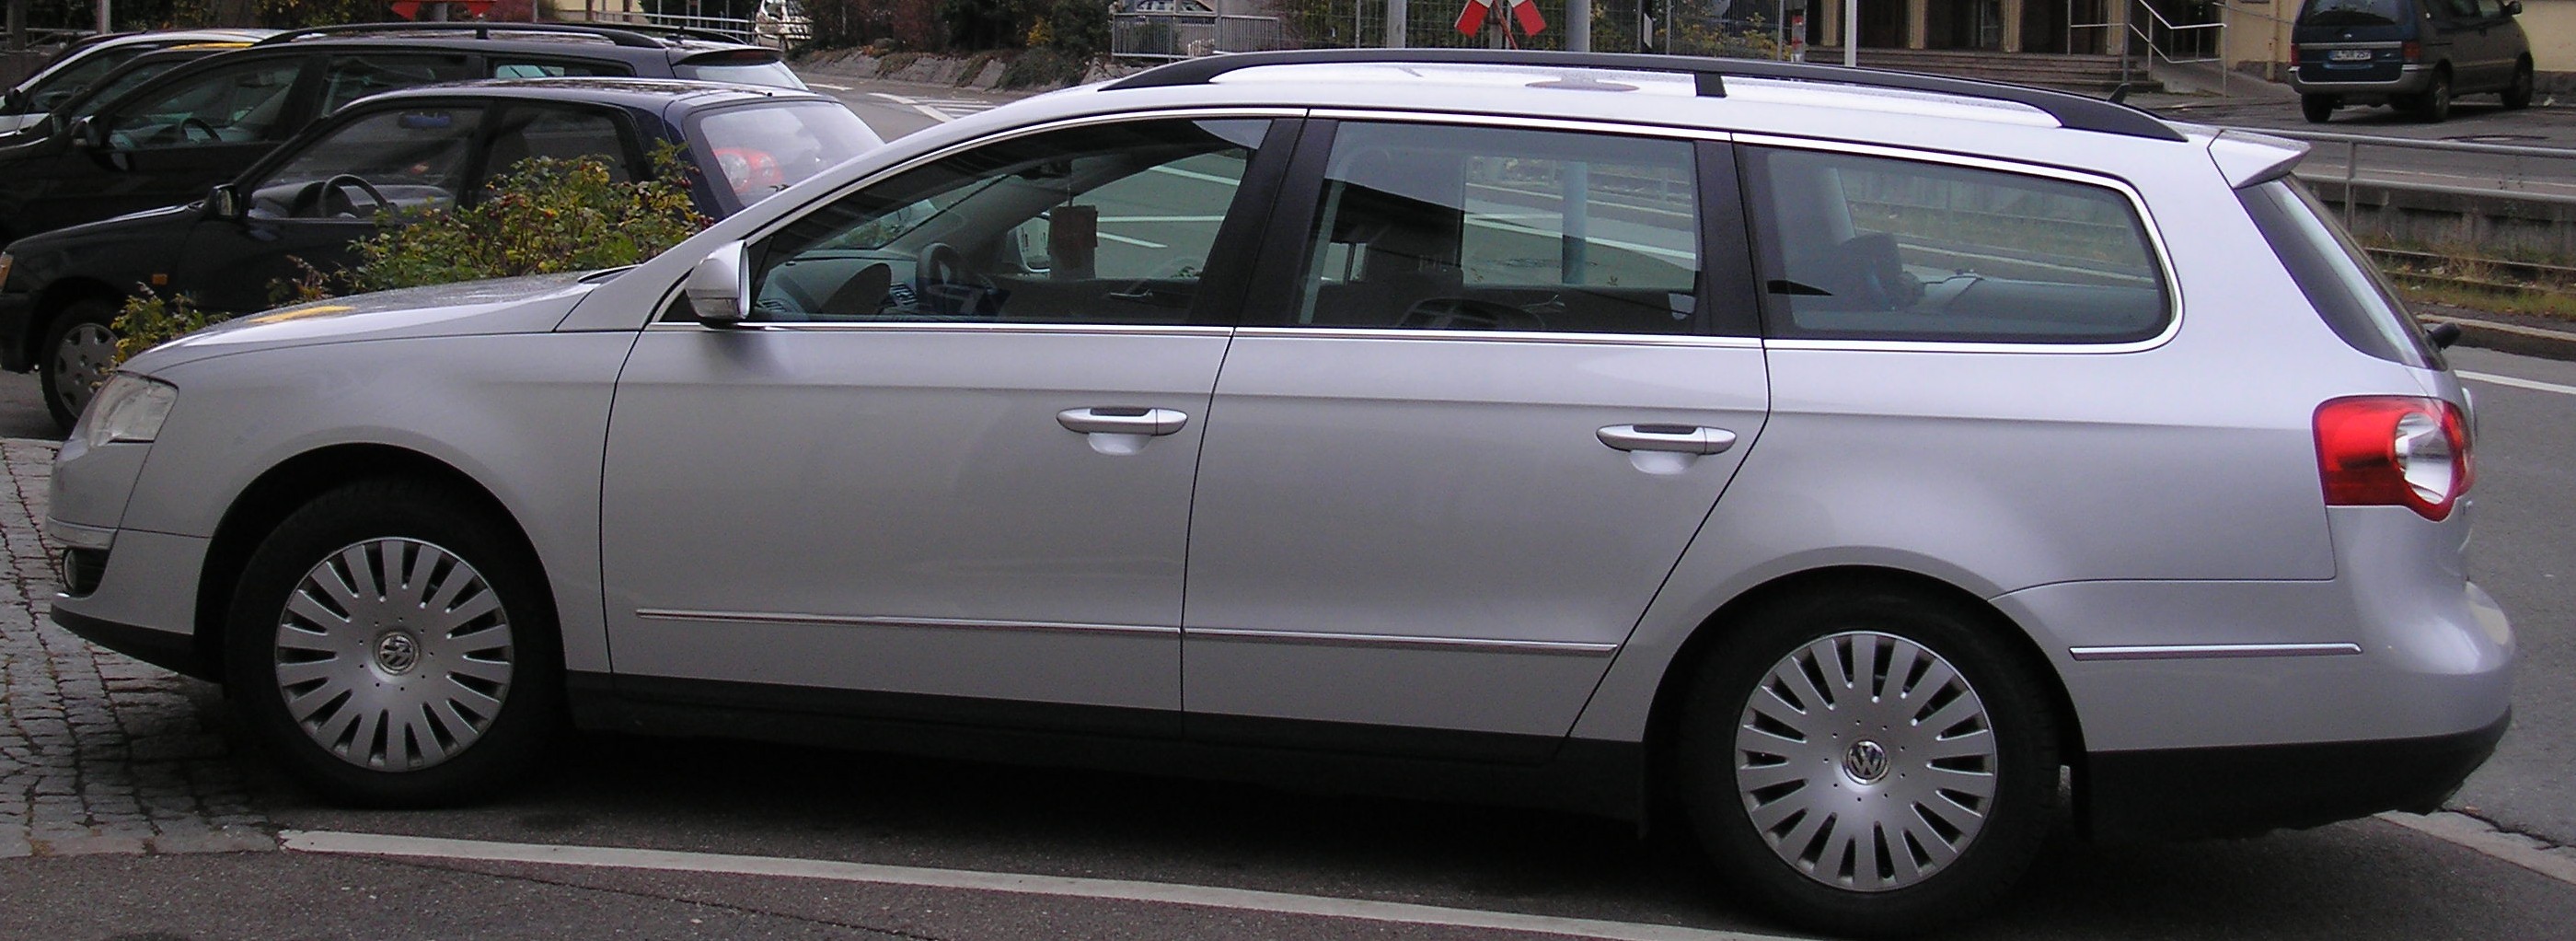 File:VW Passat Variant 2005.jpg - Wikimedia Commons